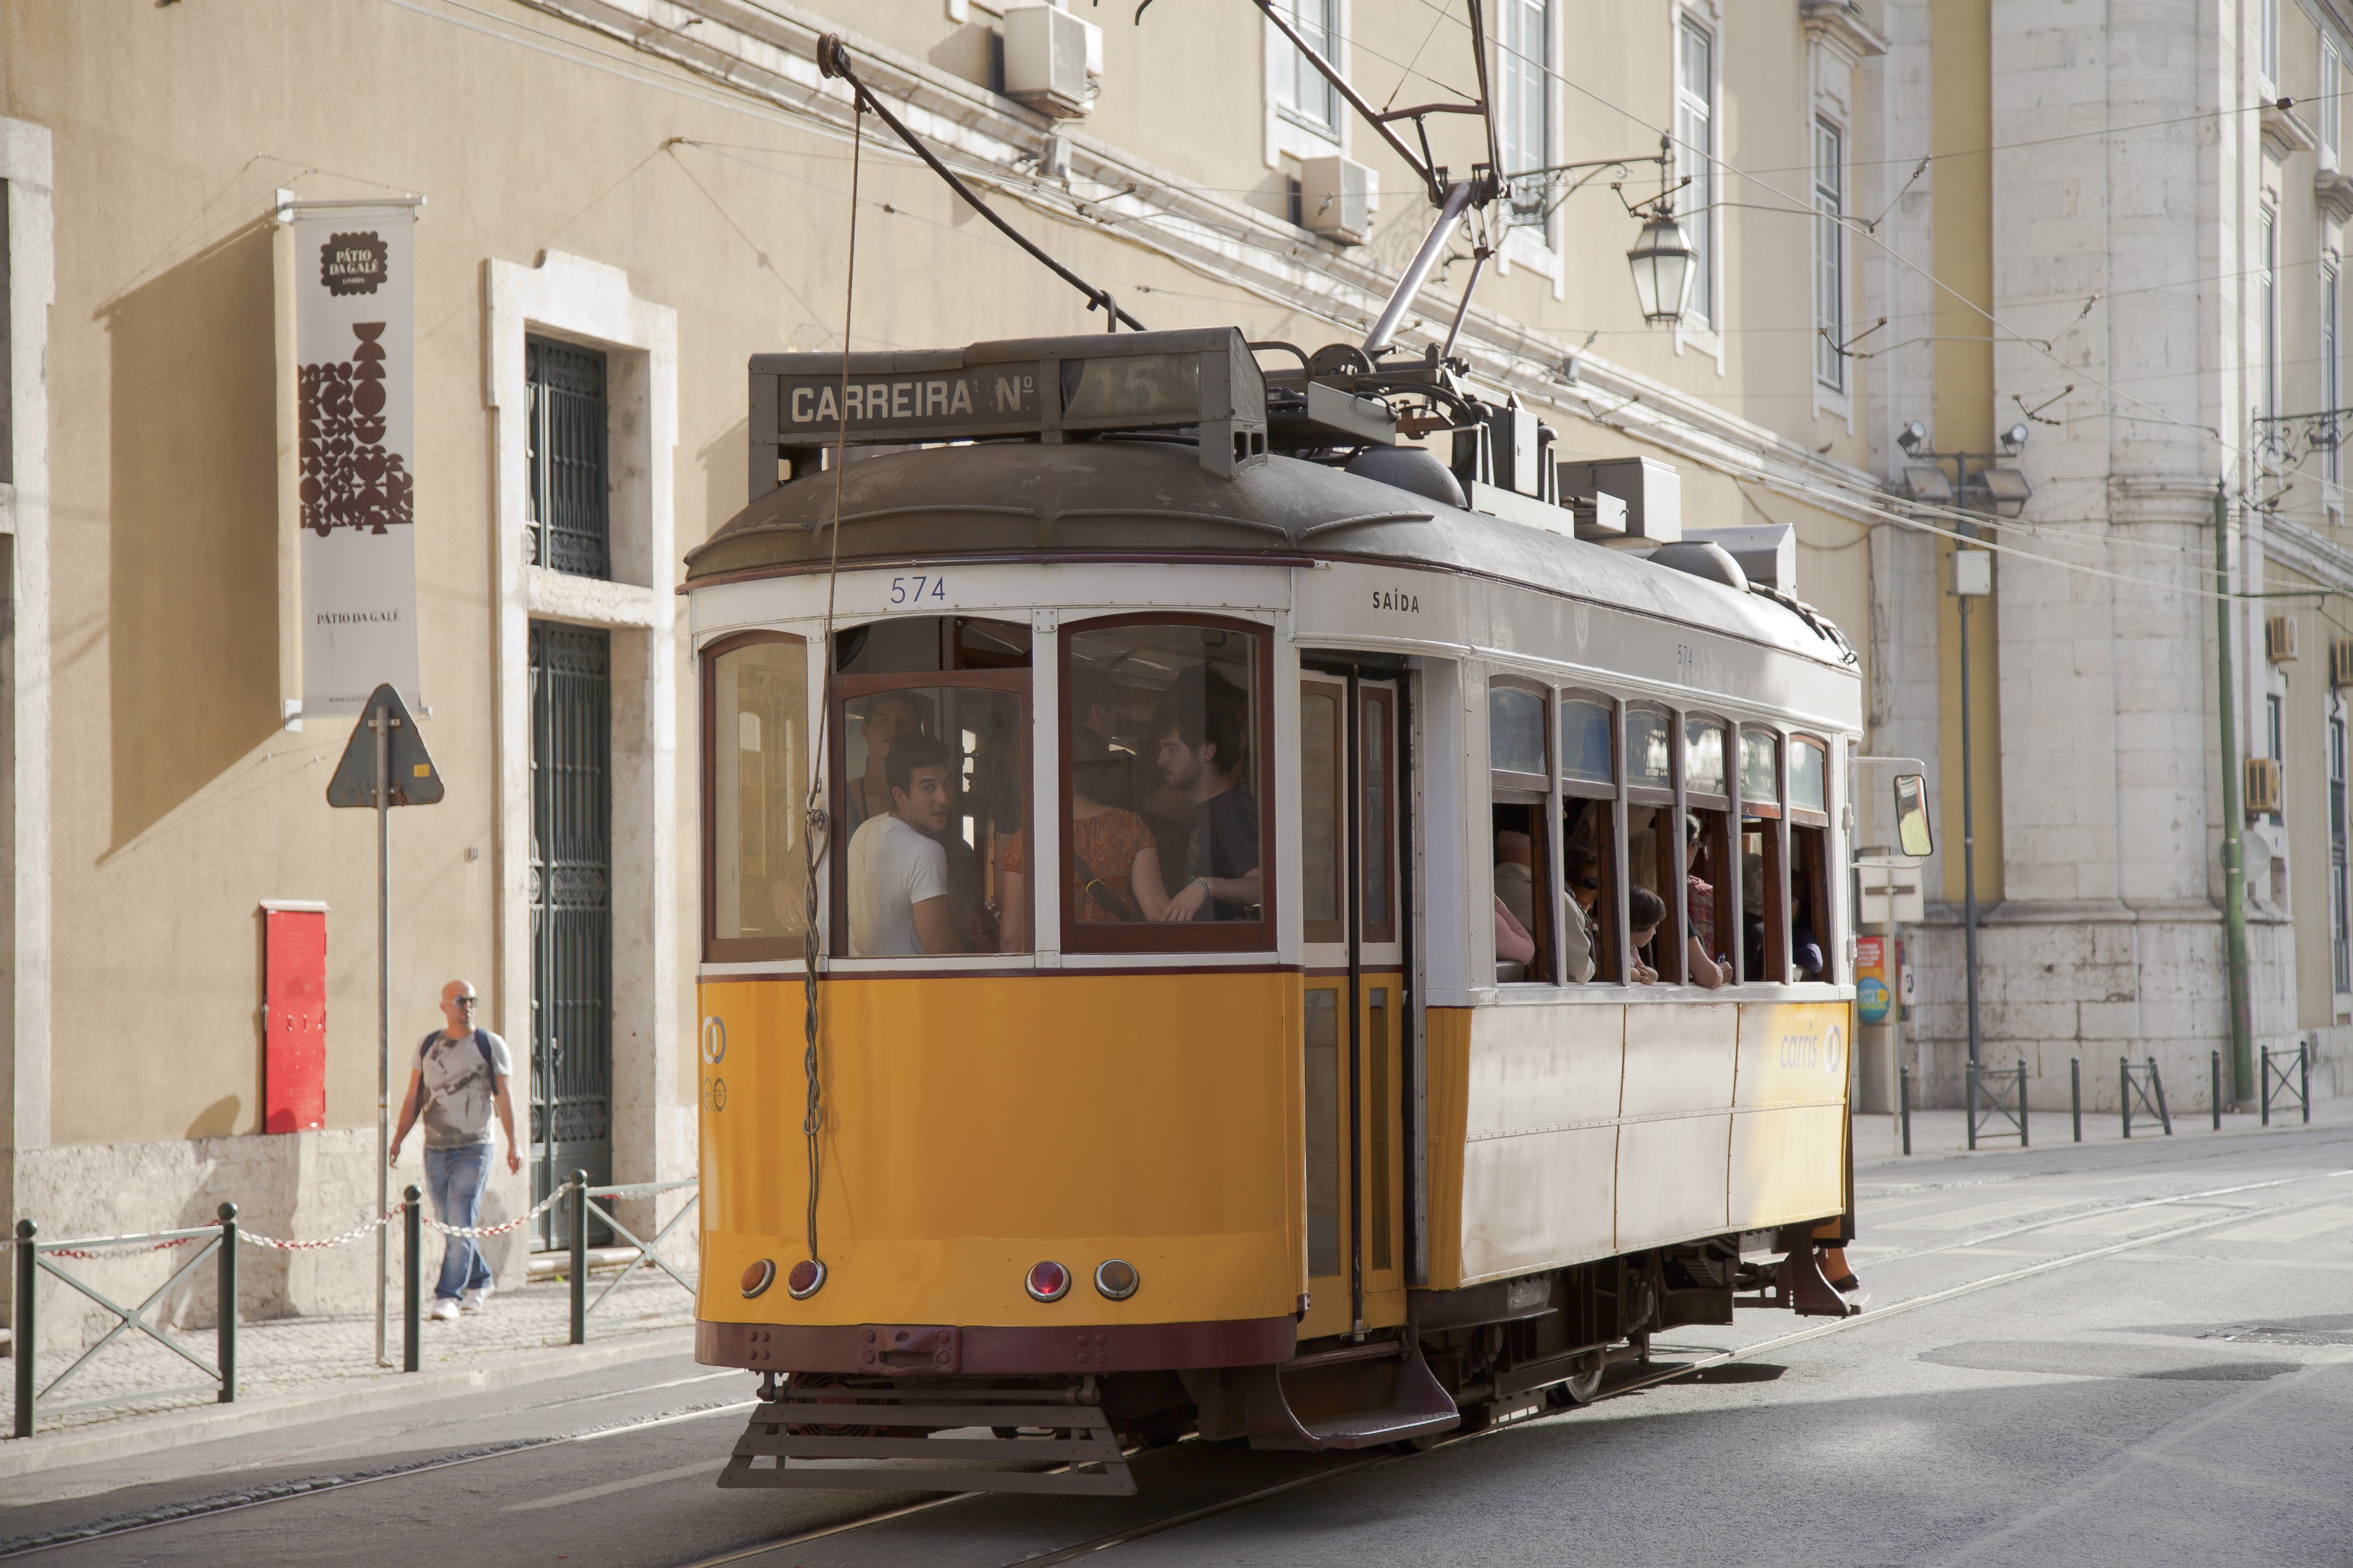 Tranvía en Rua Arsenal, Lisboa, Portugal, 2012-05-12, DD 01